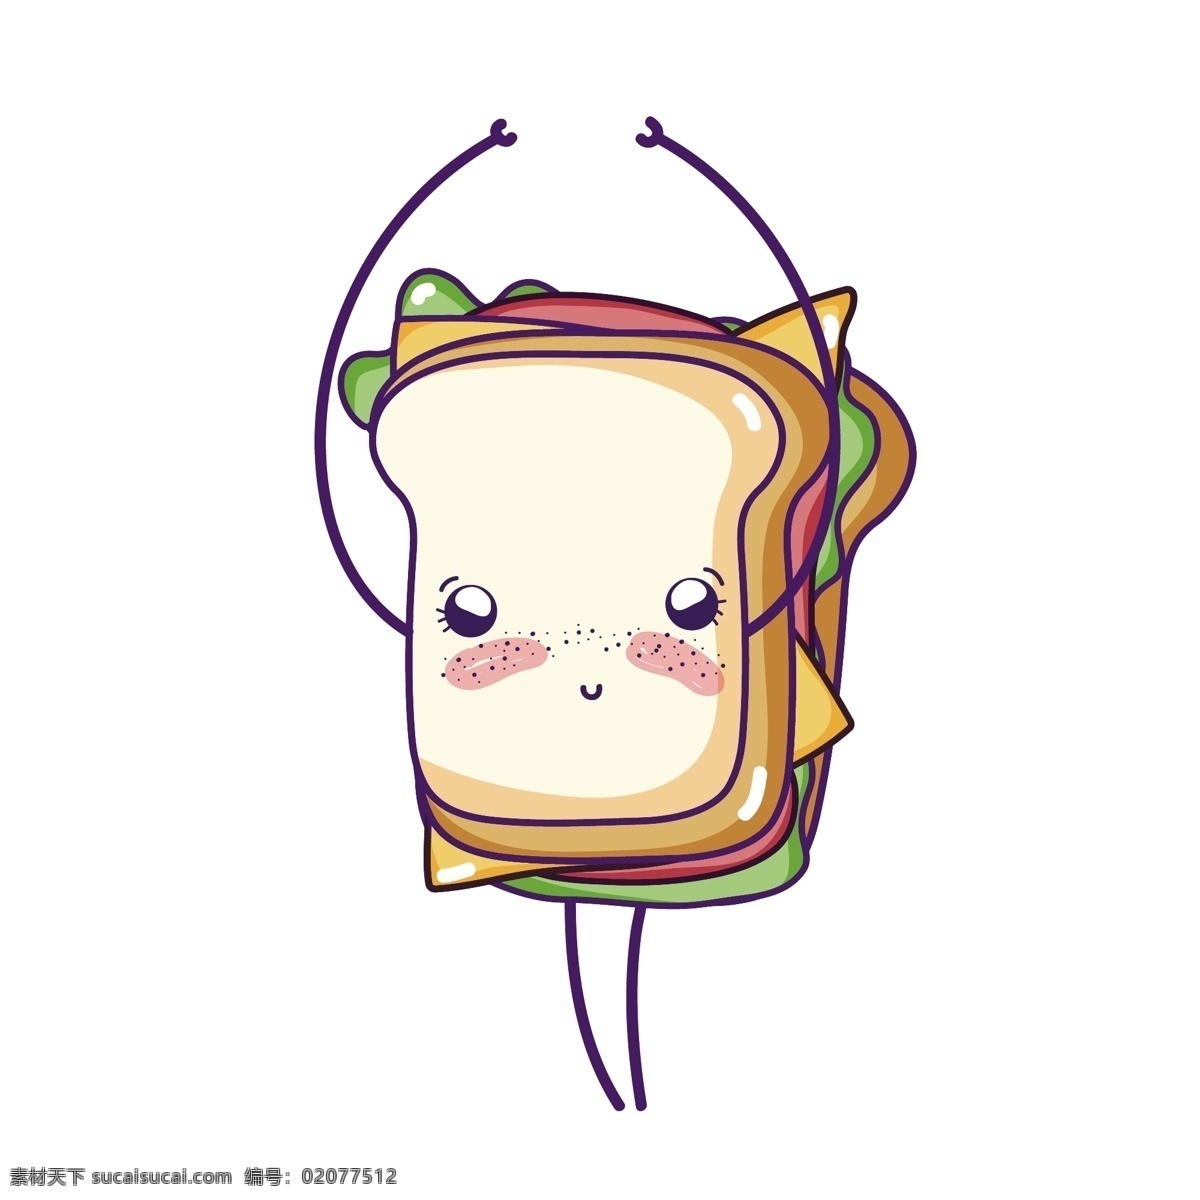 萌 三明治 矢量 可爱 可爱三明治 卡通 卡通三明治 手绘 手绘的 手绘可爱 可爱的